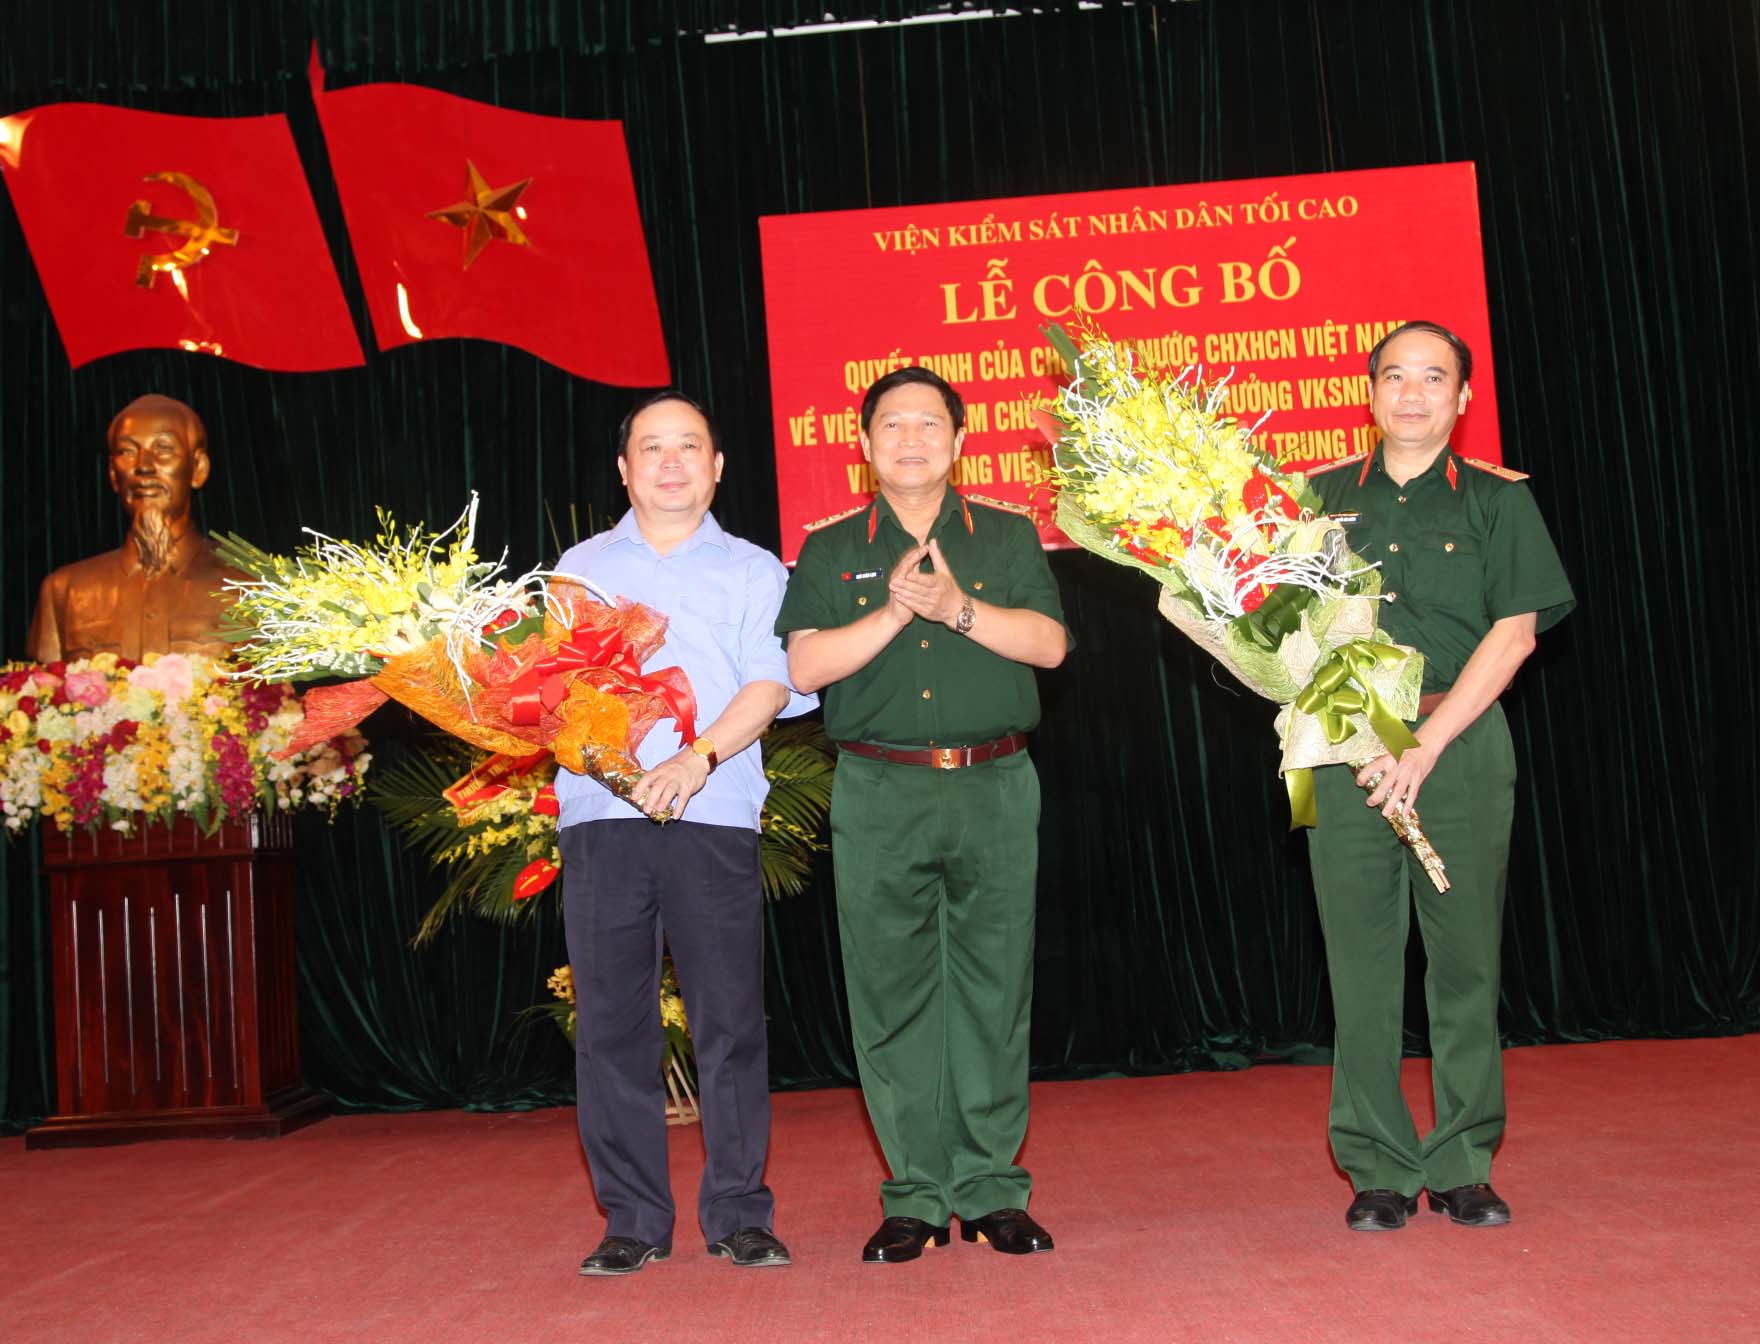 Thượng tướng Ngô Xuân Lịch, Chủ nhiệm Tổng cục chính trị QĐND Việt Nam tặng hoa cho đồng chí Trần Phước Tới và đồng chí Nguyễn Văn Khánh tại buổi Lễ